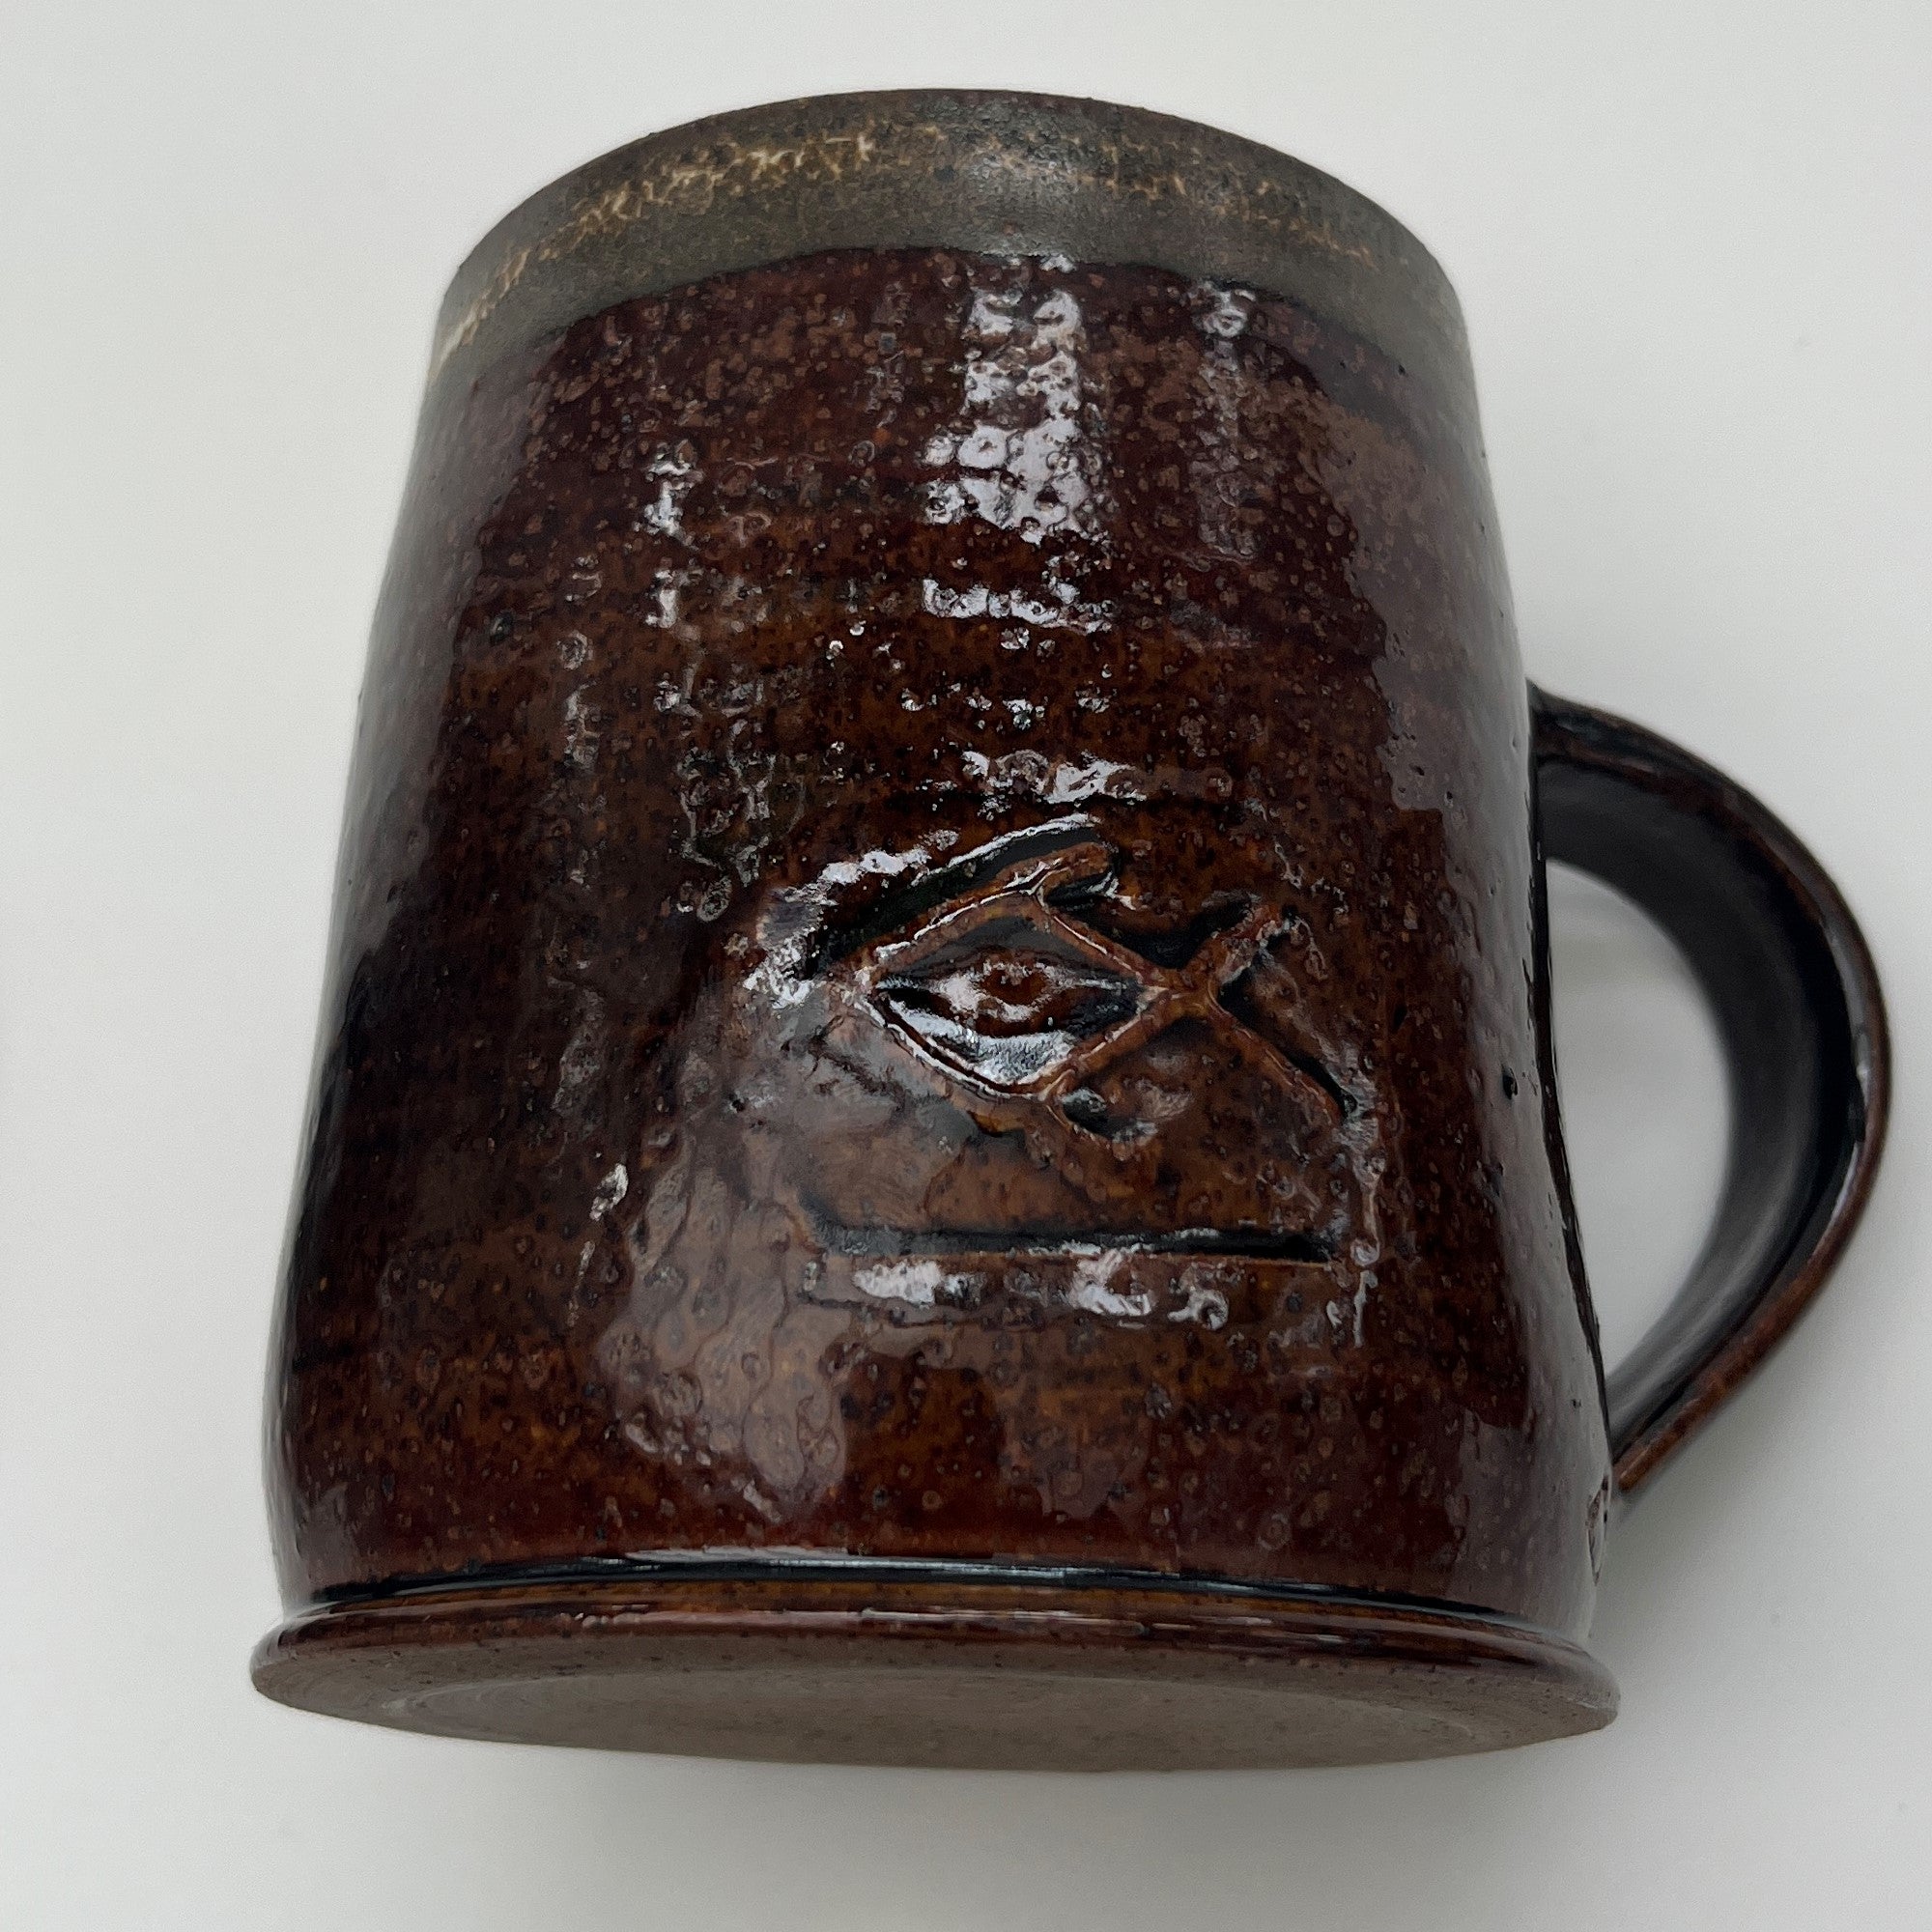 Base & side of Ceramic glazed mug handmade by Brett Smout.